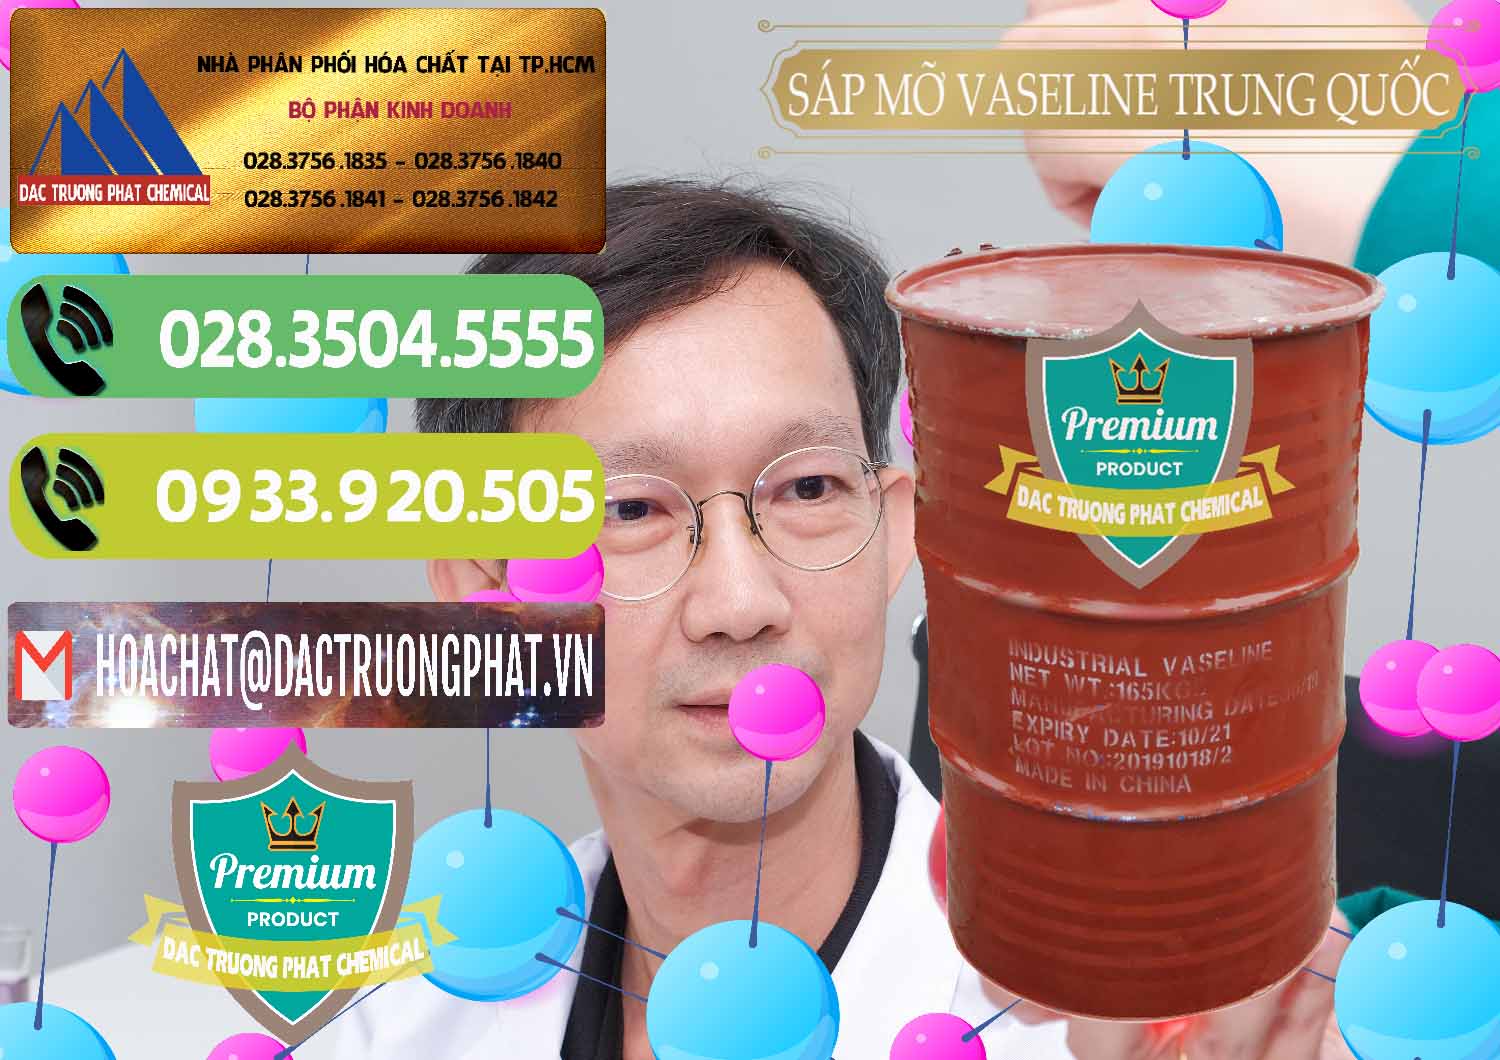 Cty cung cấp & bán Sáp Mỡ Vaseline Trung Quốc China - 0122 - Kinh doanh và phân phối hóa chất tại TP.HCM - hoachatmientay.vn